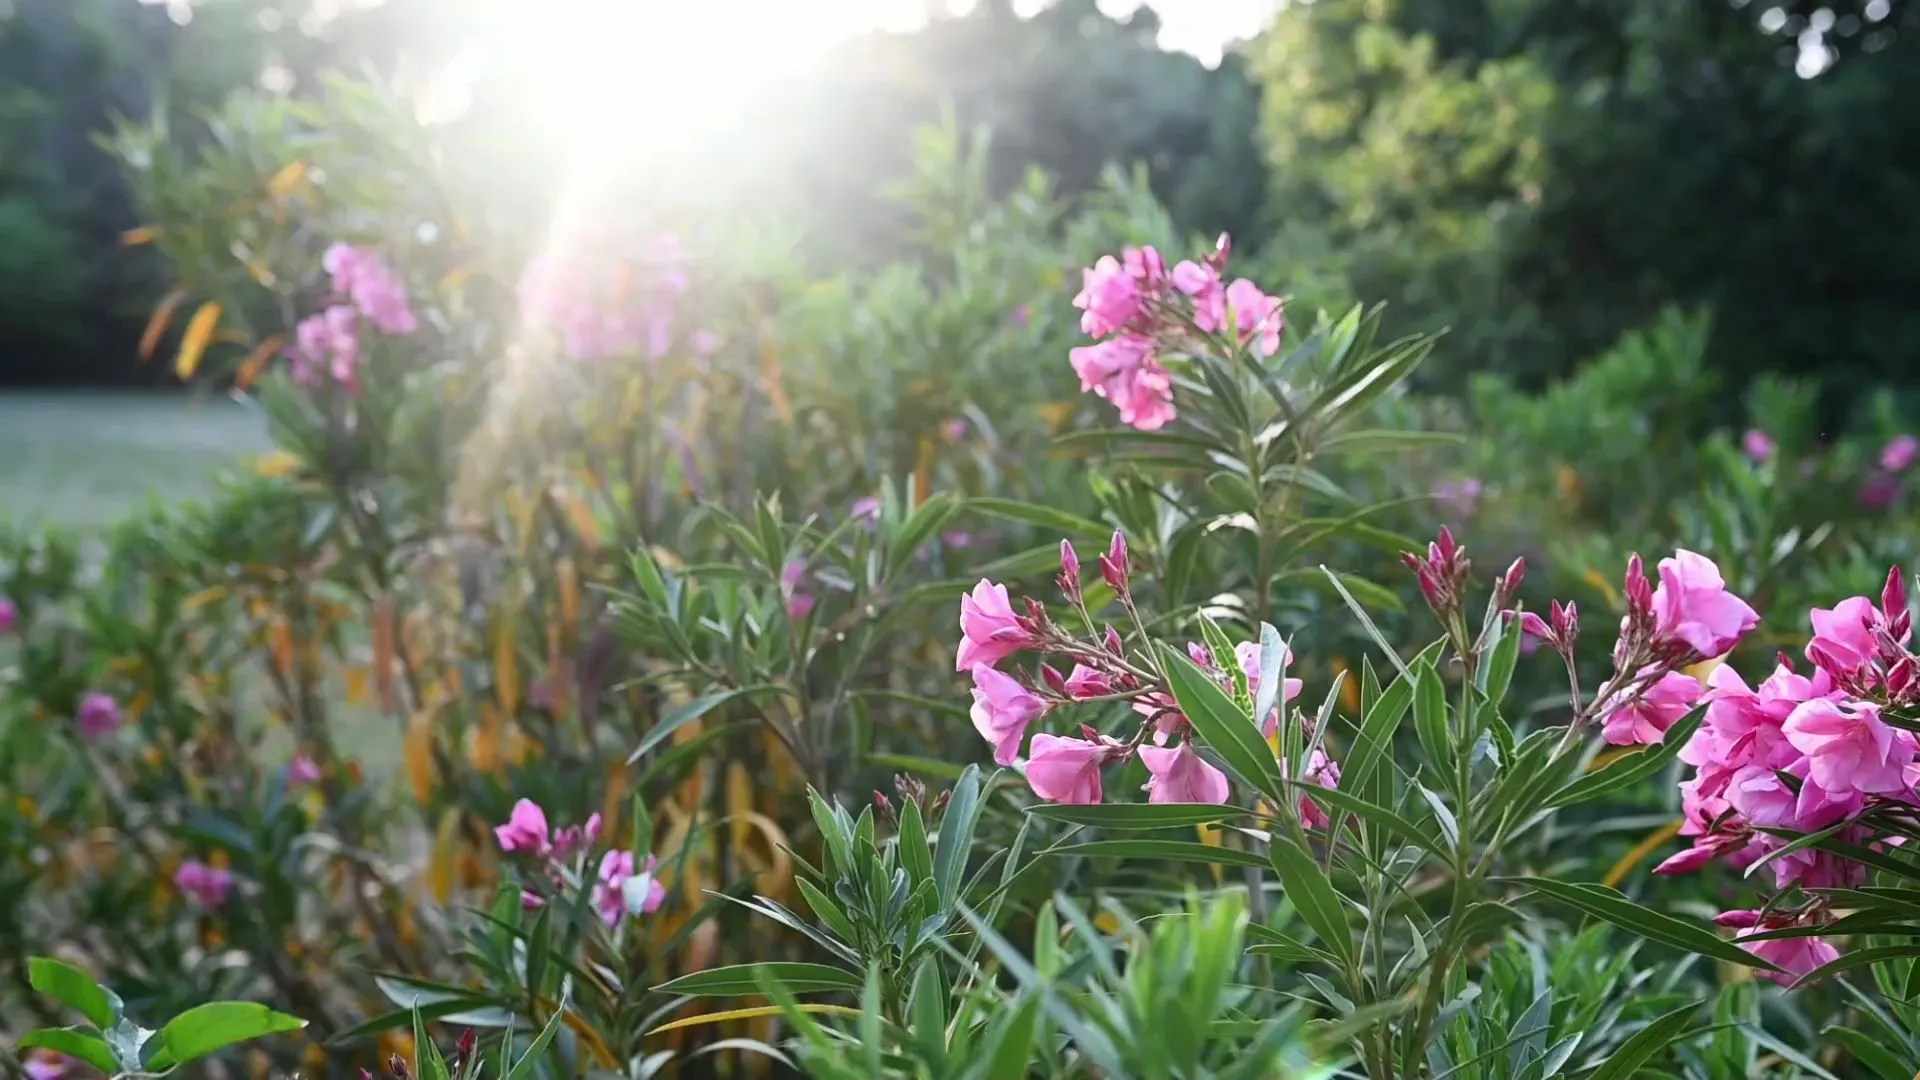 Oleander snoeien: Hoe houd je de plant mooi